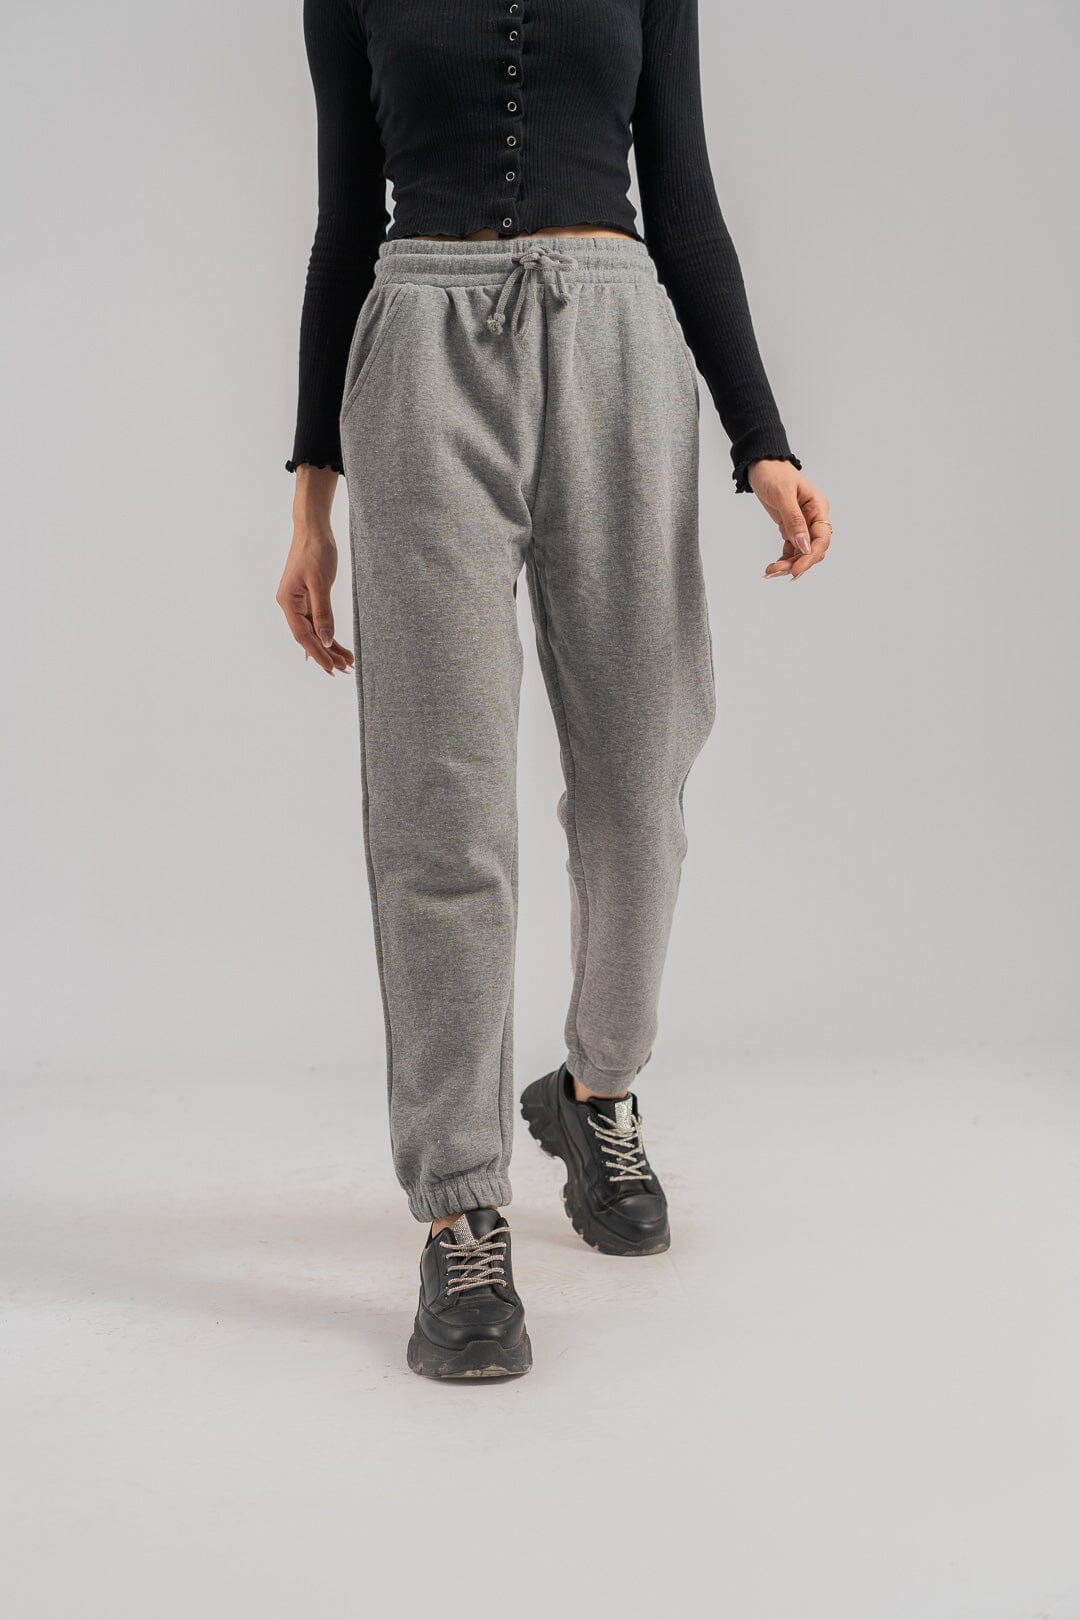 NTWRK - Jordan Brooklyn Fleece Trousers Women's